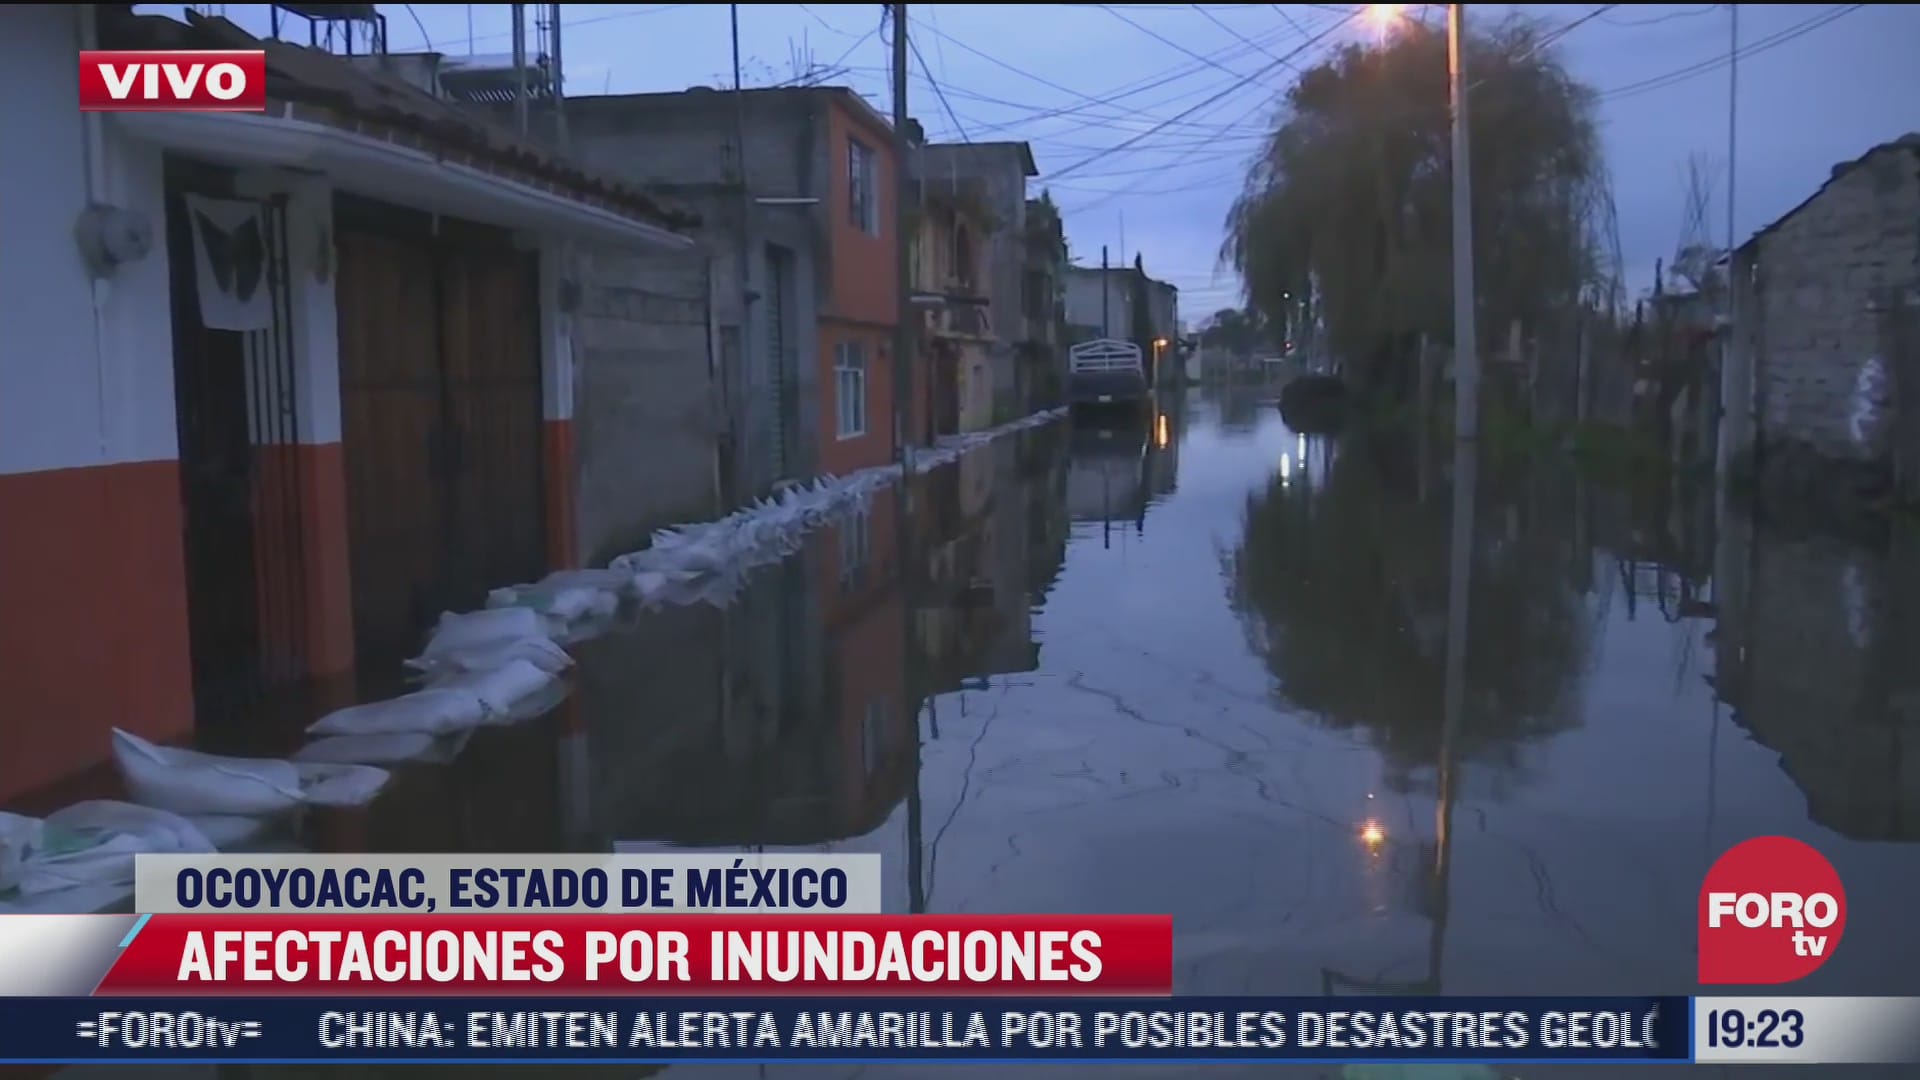 denuncian afectaciones por inundaciones en el estado de mexico